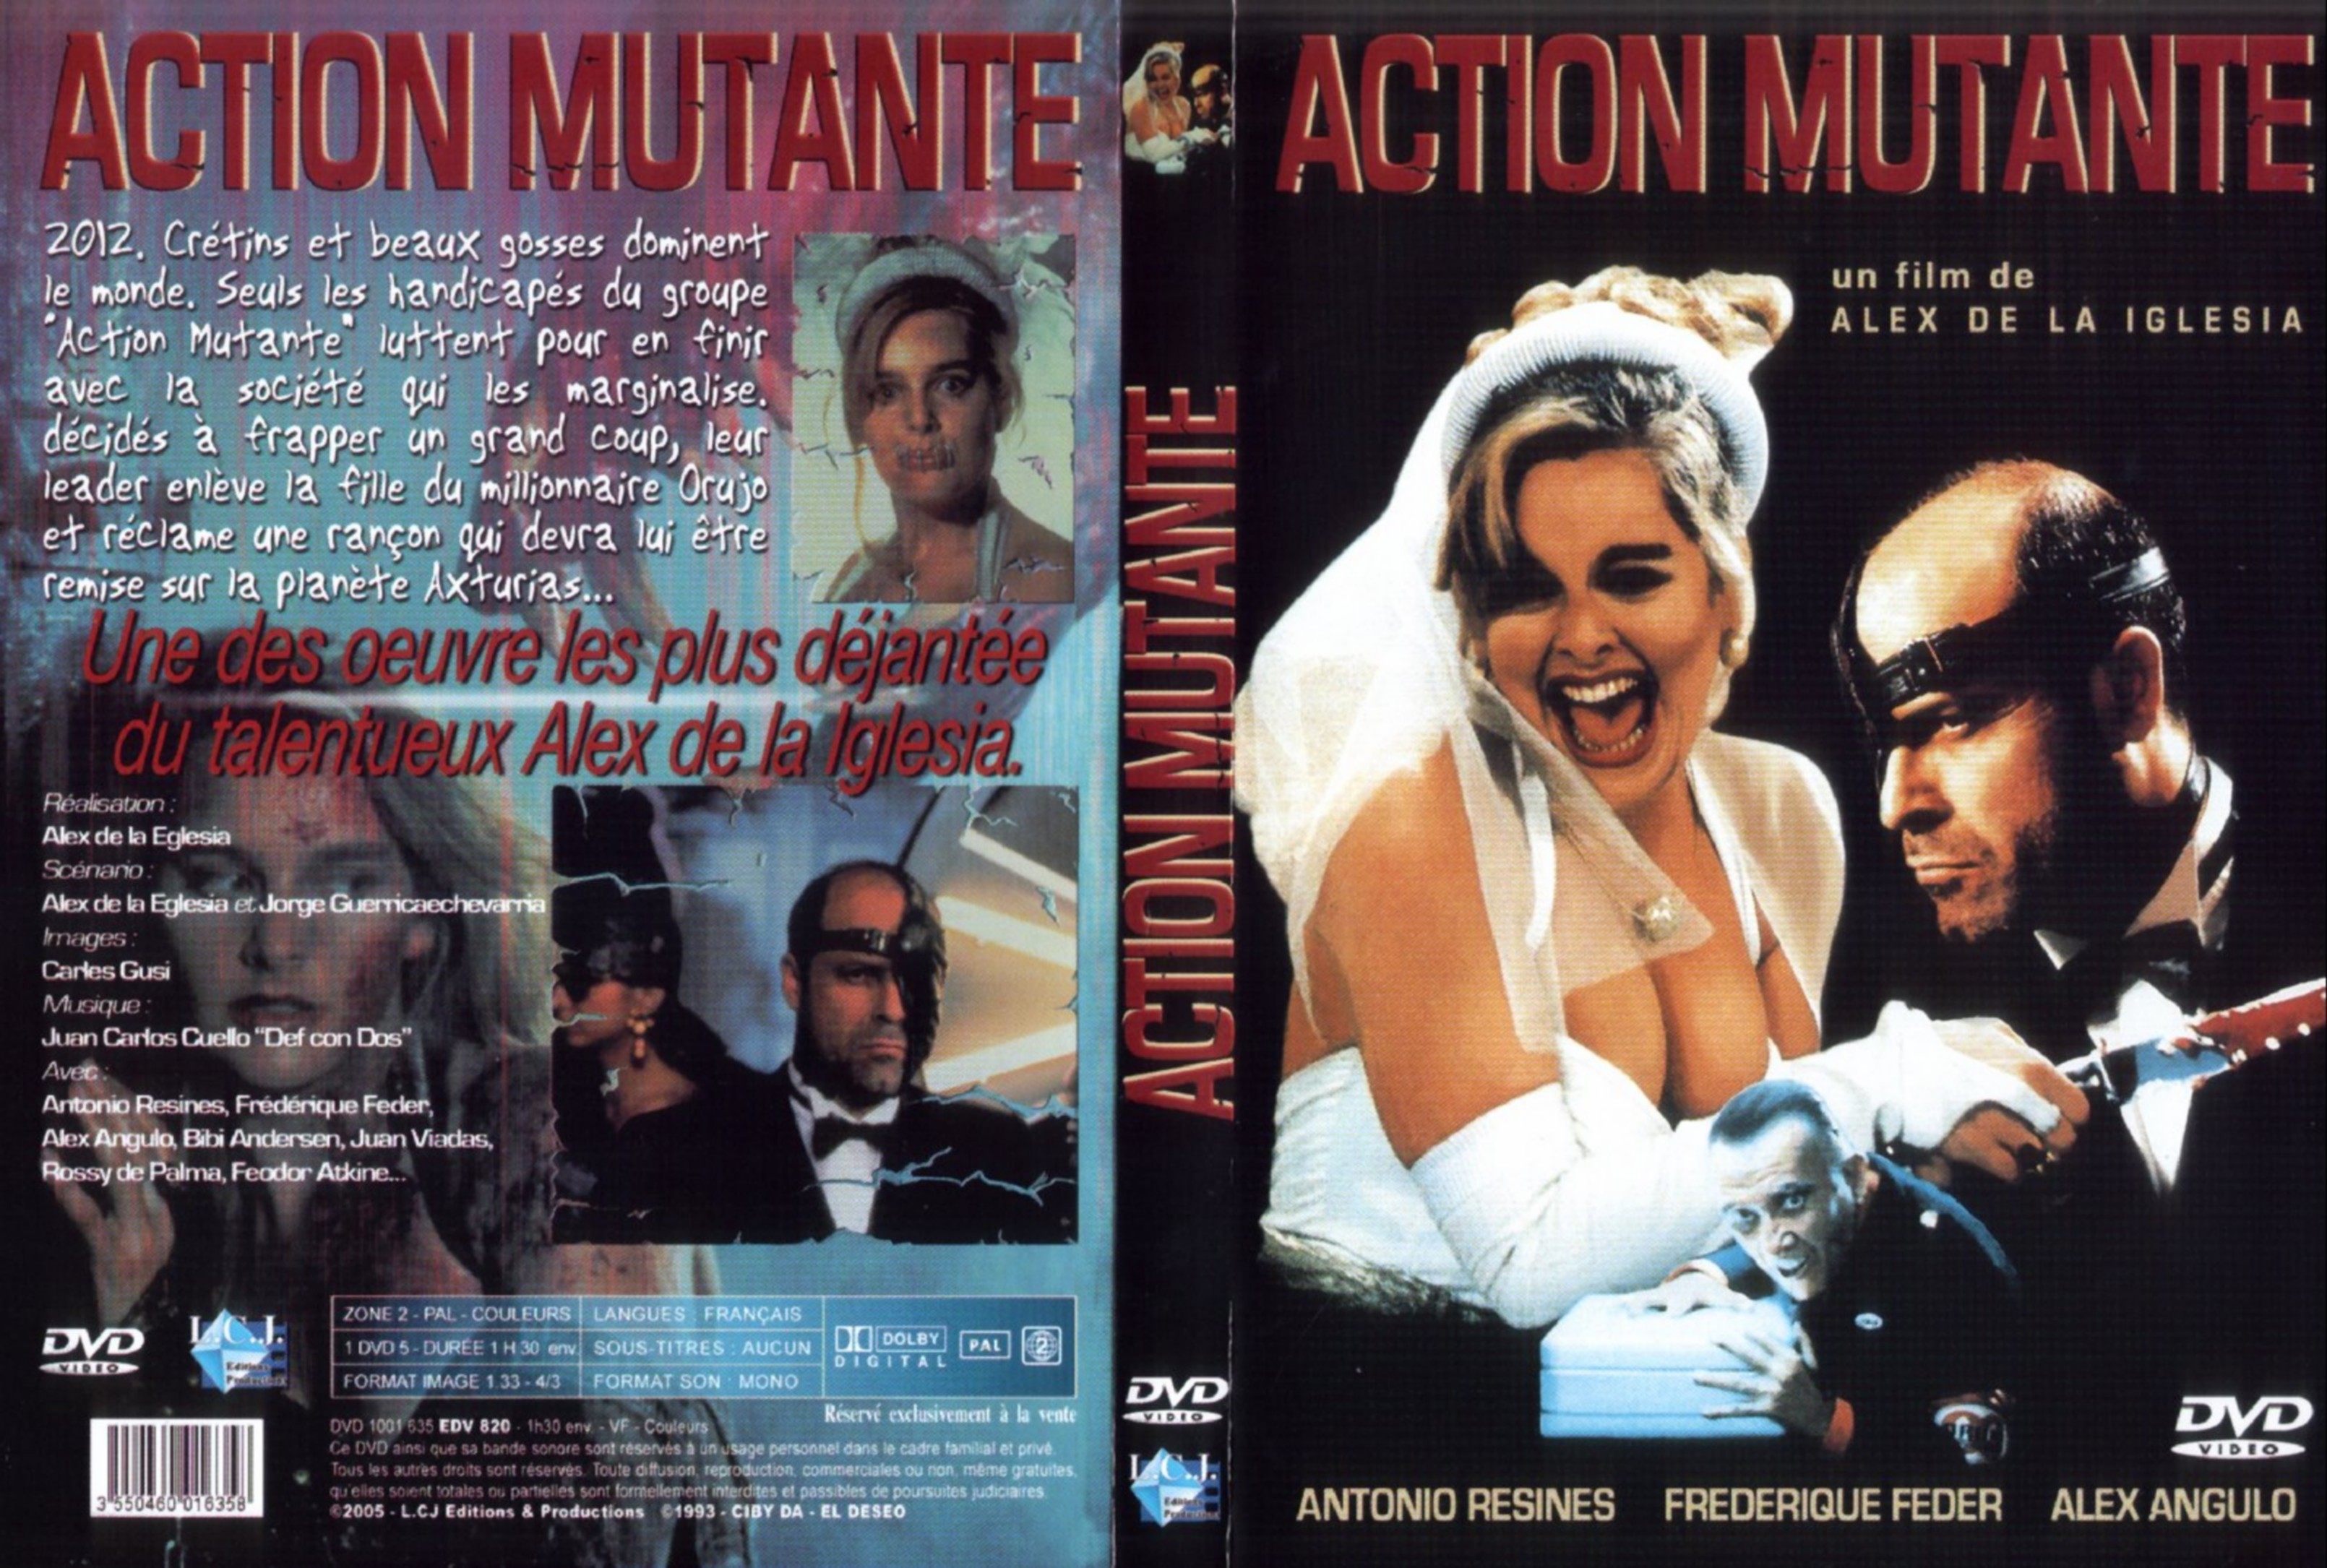 Jaquette DVD Action mutante